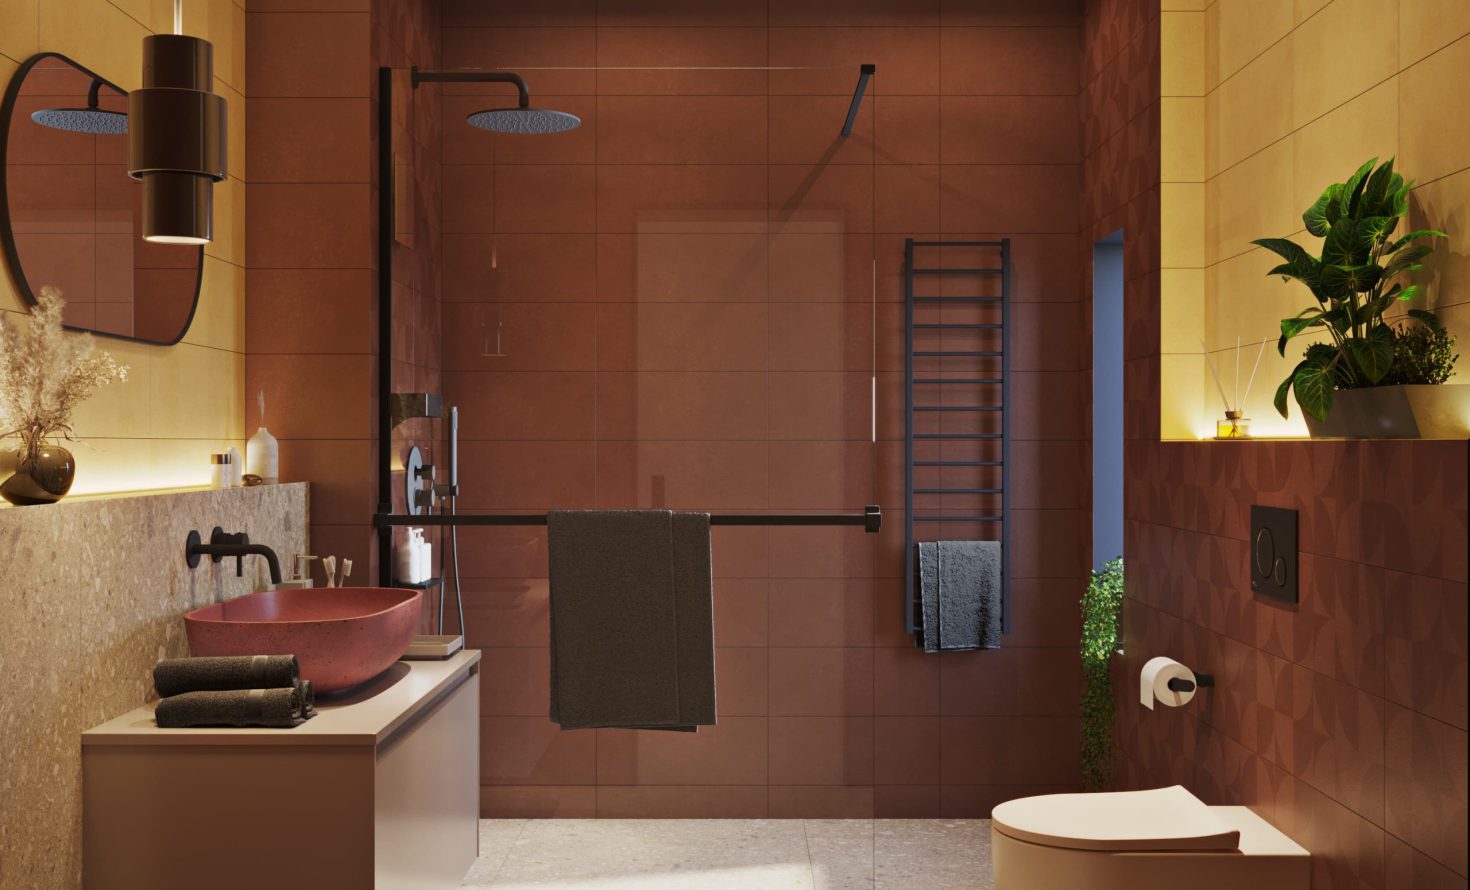 SIKO Barevná koupelna, terrazzo, zemité barvy, cihlová, žlutá, barevné umyvadlo, závěsné WC, walk in sprchový kout, černé baterie v koupelně